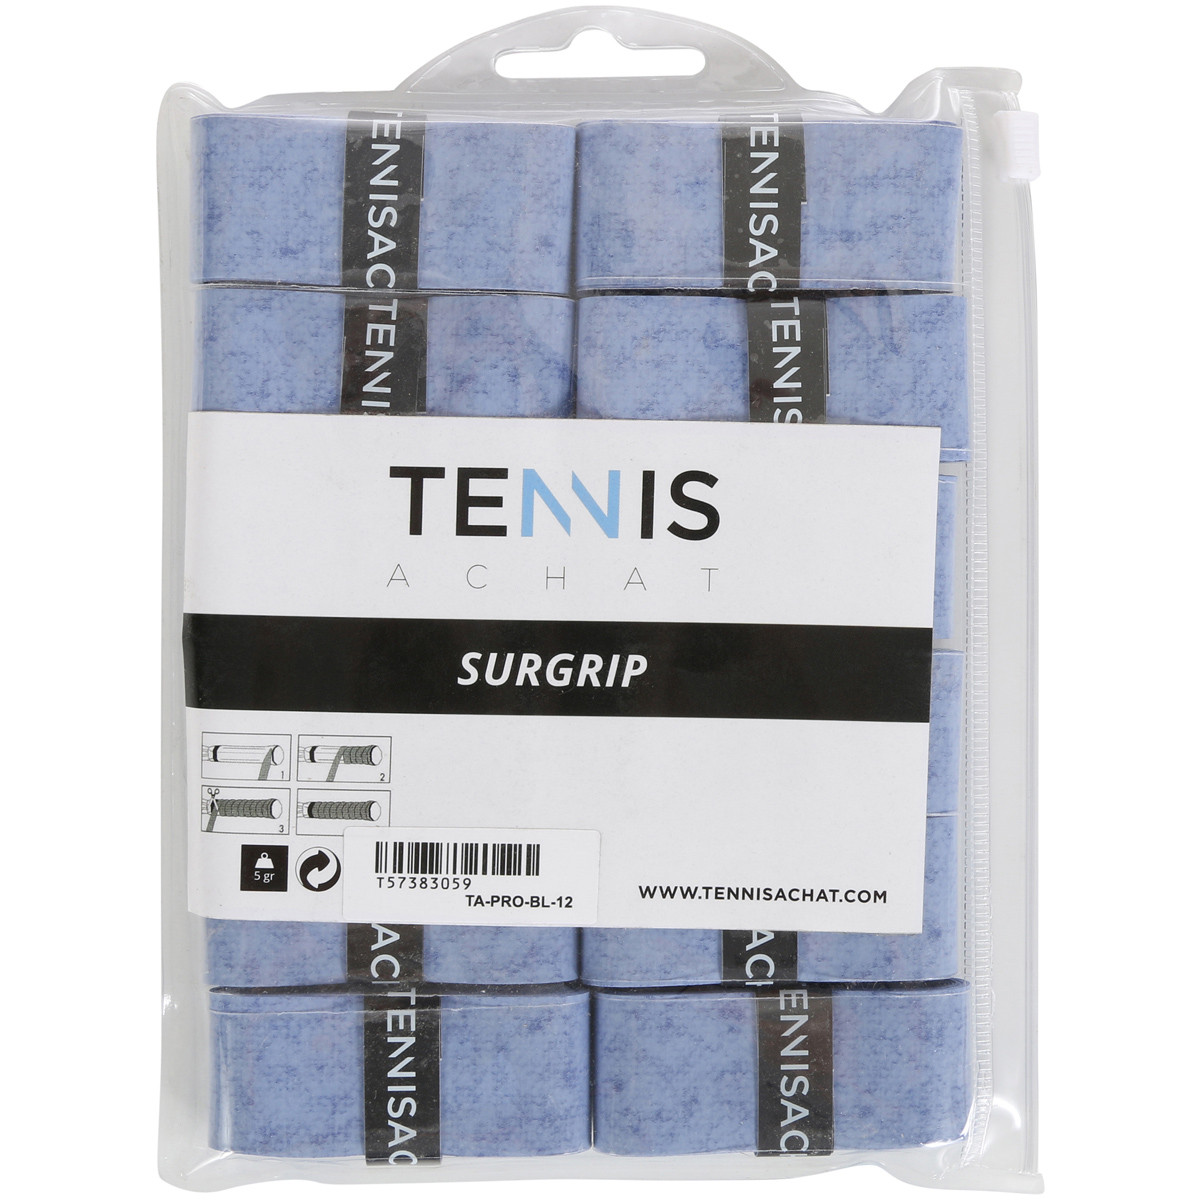 12 Surgrips Tennis Achat Sensation Bleus